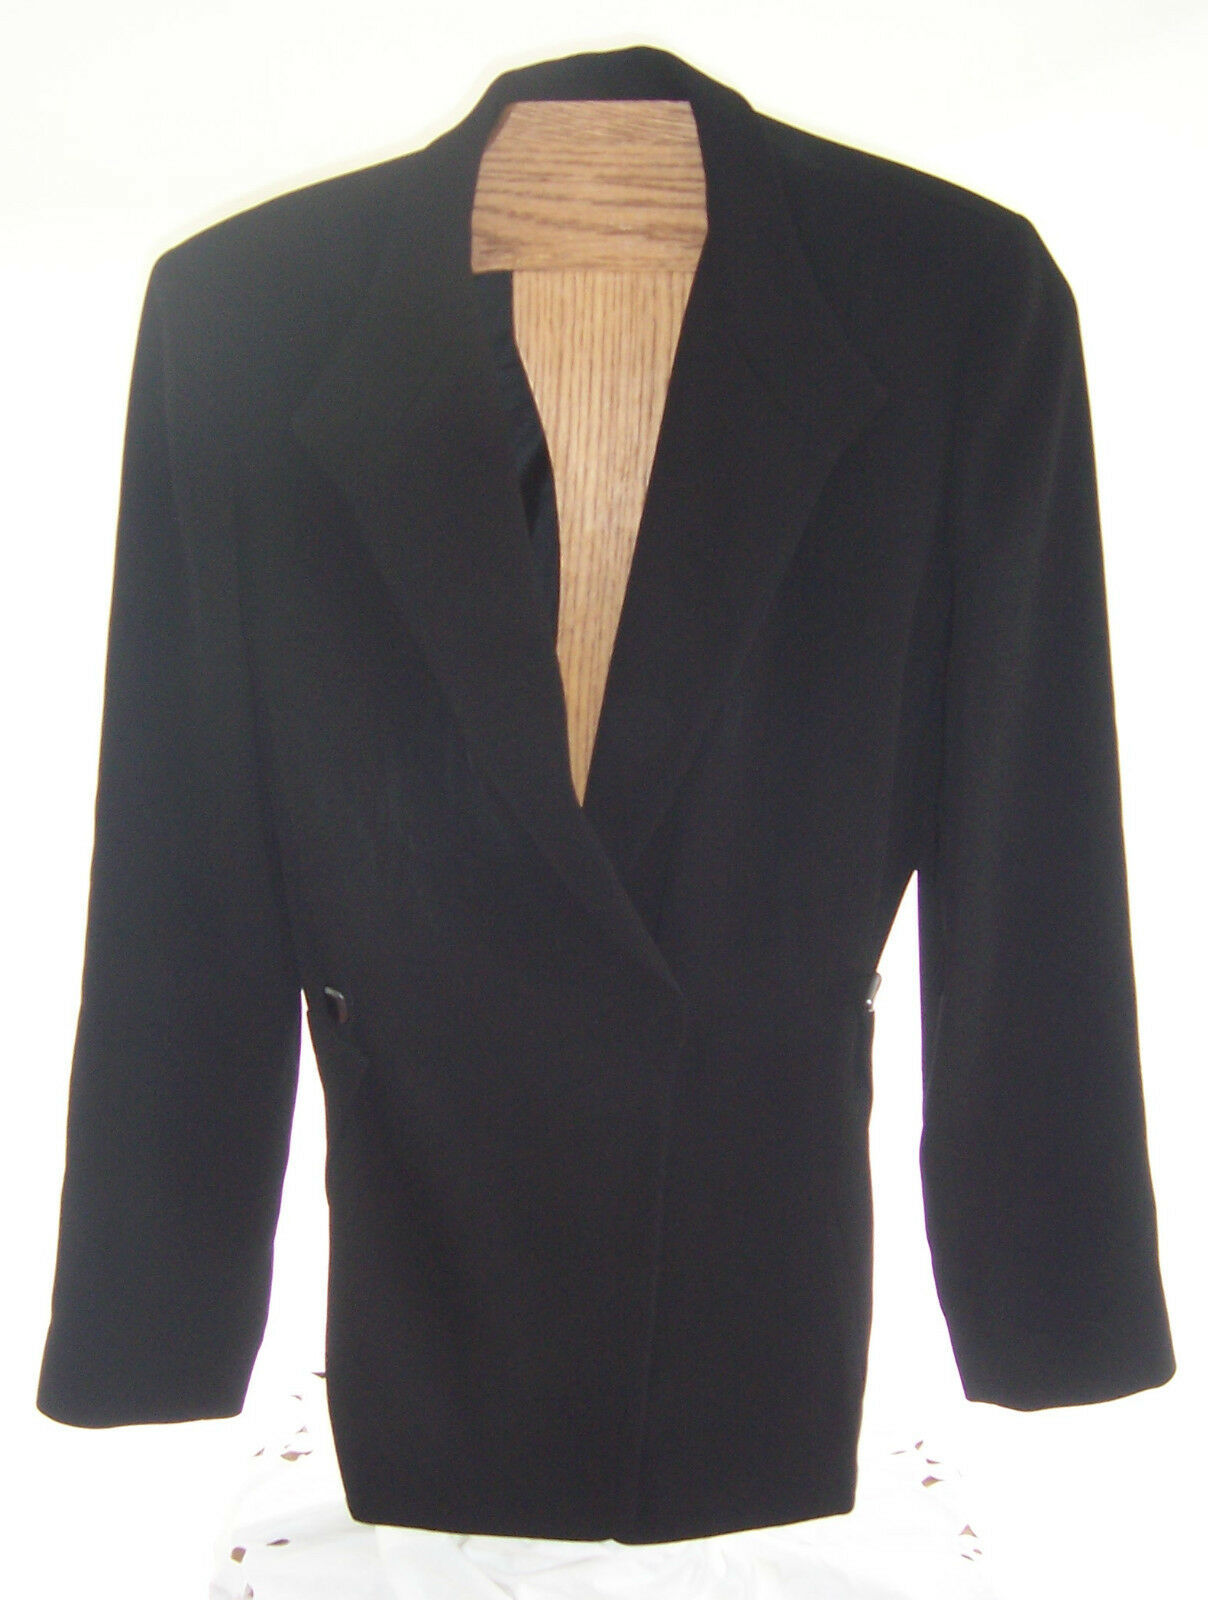 Primary image for Penta Black Suit jacket blazer Misses Size 10